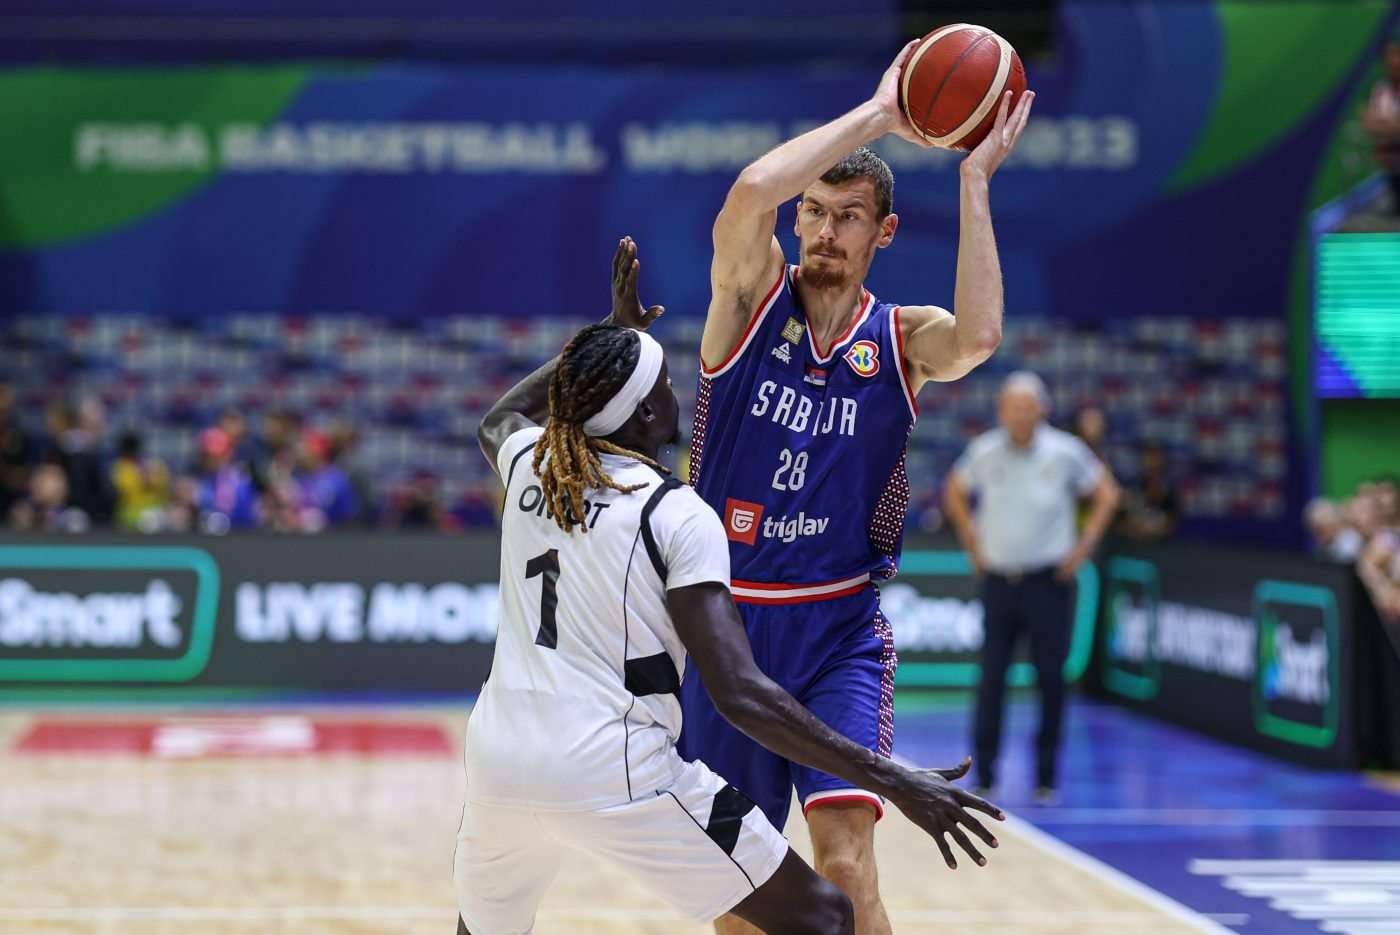 Mistrzostwa Świata FIBA: Koszykarz reprezentacji Serbii stracił nerkę!